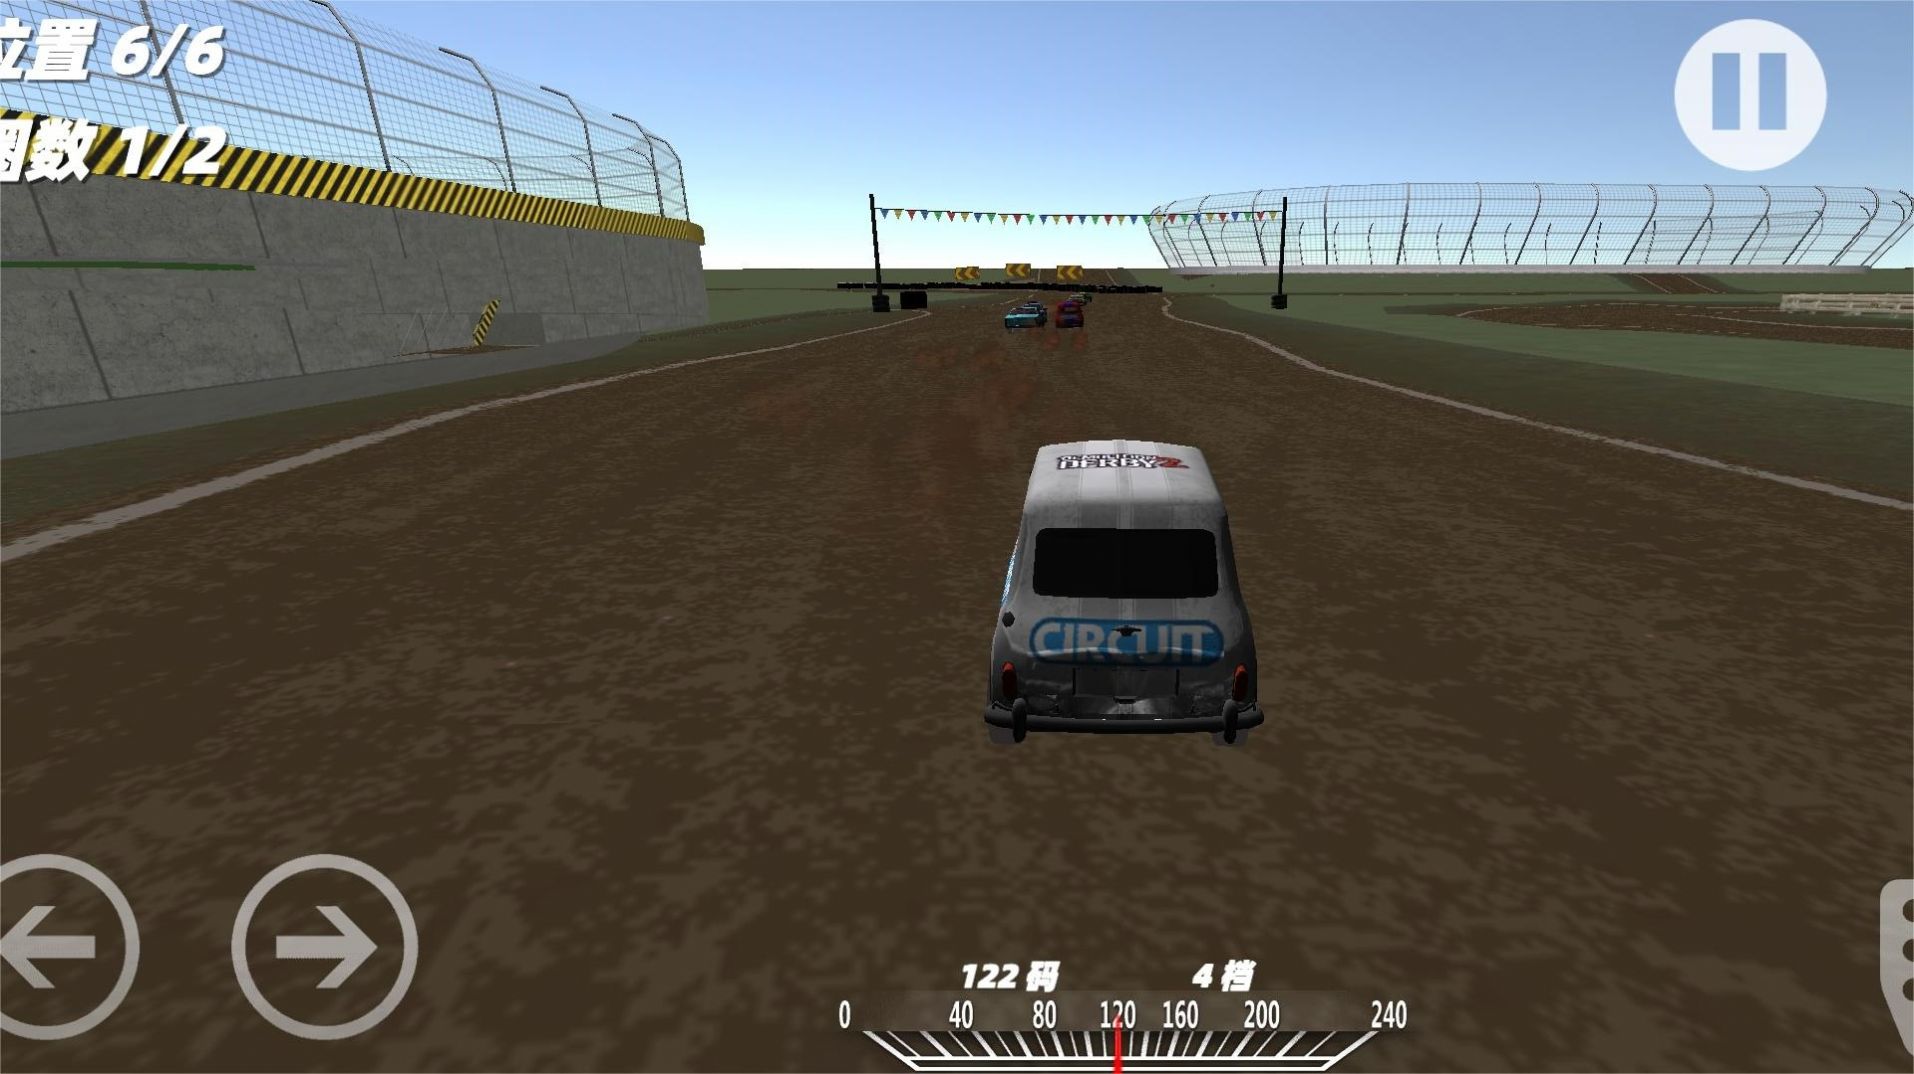 模拟真实车祸事故游戏安卓版下载 v1.0截图1